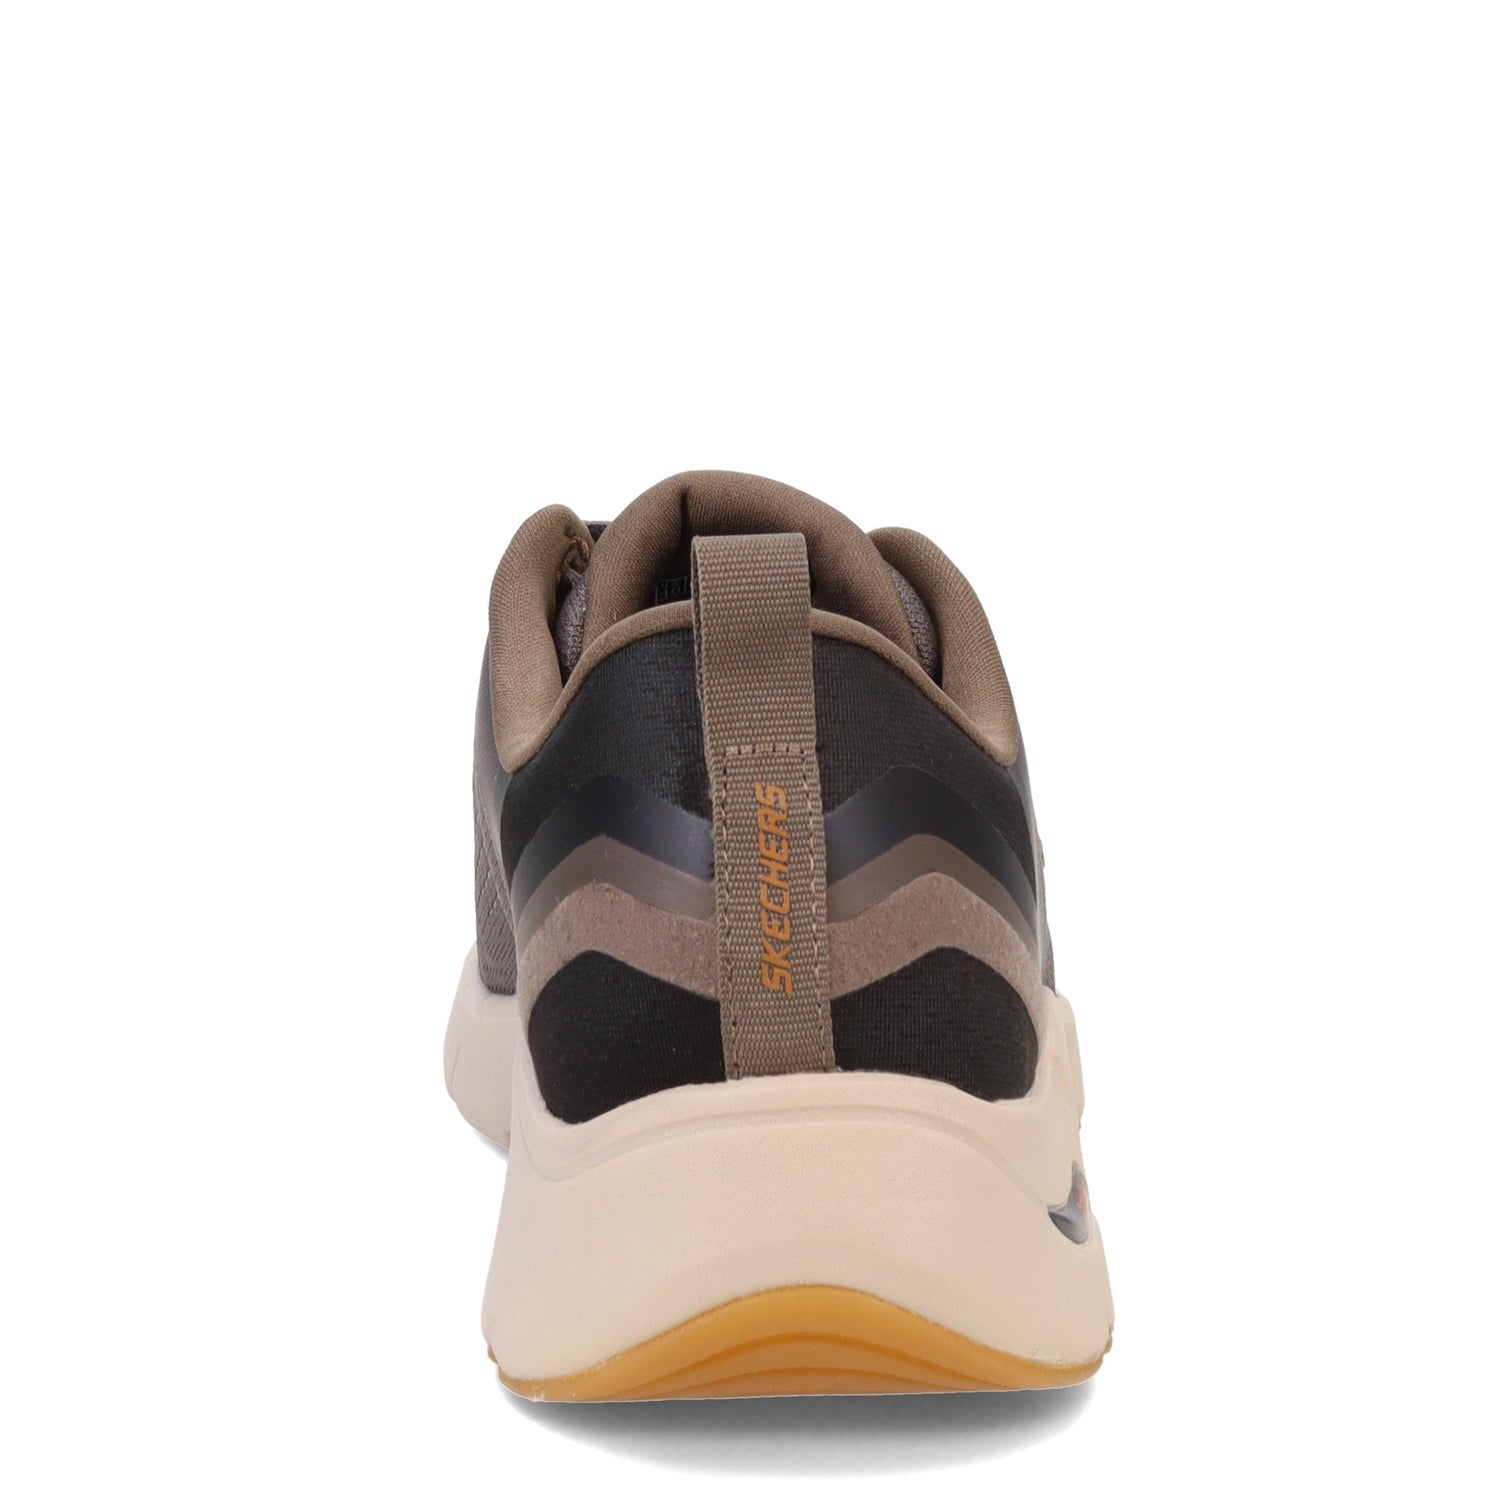 Peltz Shoes  Men's Skechers Arch Fit Kholer Sneaker Taupe/Black 232554-TPBK